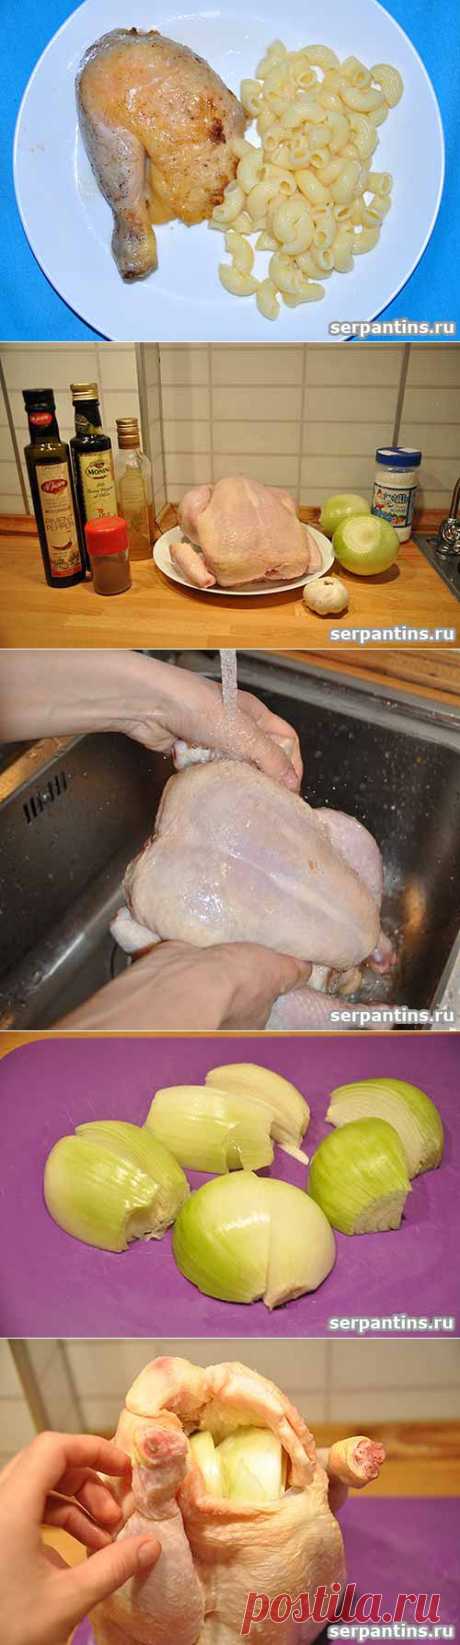 Запеченный в фольге цыпленок | Серпантин